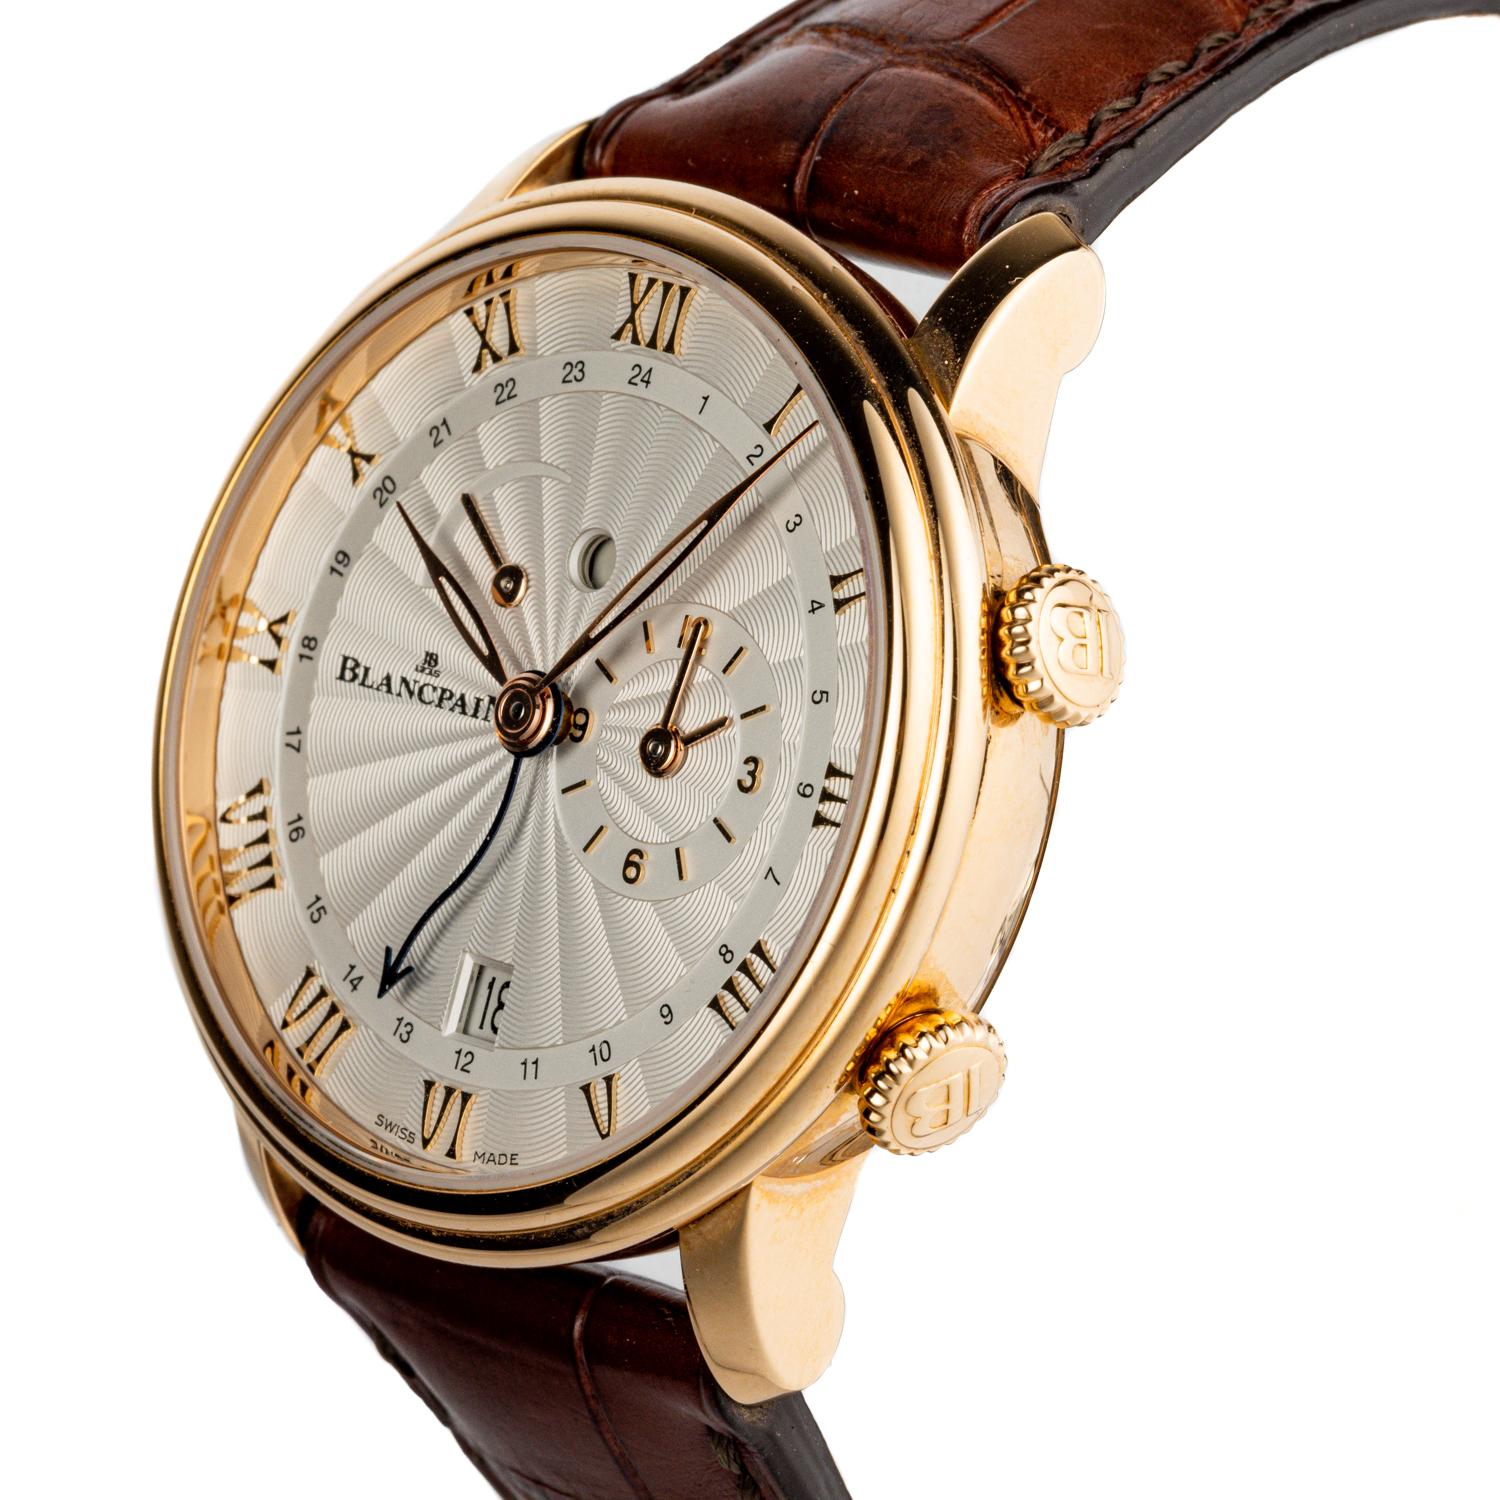 Découvrez le summum de l'horlogerie de luxe avec la montre Blancpain 18KRG Villeret Reveil GMT, numéro de modèle 6640-3642-55B. Incarnation étonnante de l'élégance intemporelle et de la précision artisanale, ce garde-temps témoigne de l'engagement